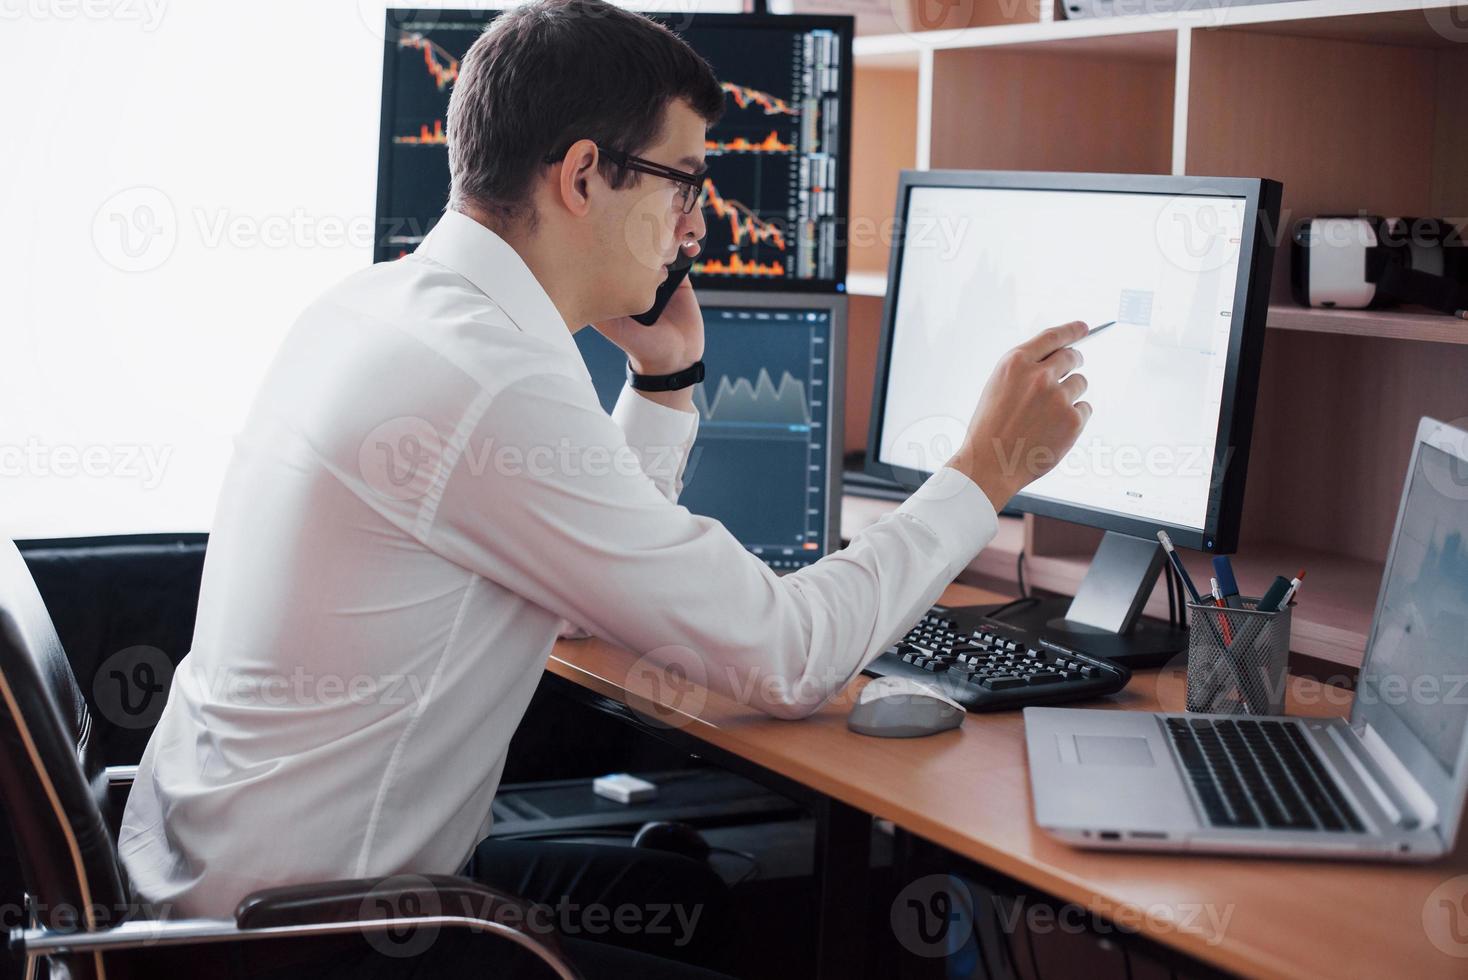 Börsenmakler im Hemd arbeitet in einem Überwachungsraum mit Bildschirmen. Börsenhandel Forex Finance Grafikkonzept. Geschäftsleute, die online mit Aktien handeln foto